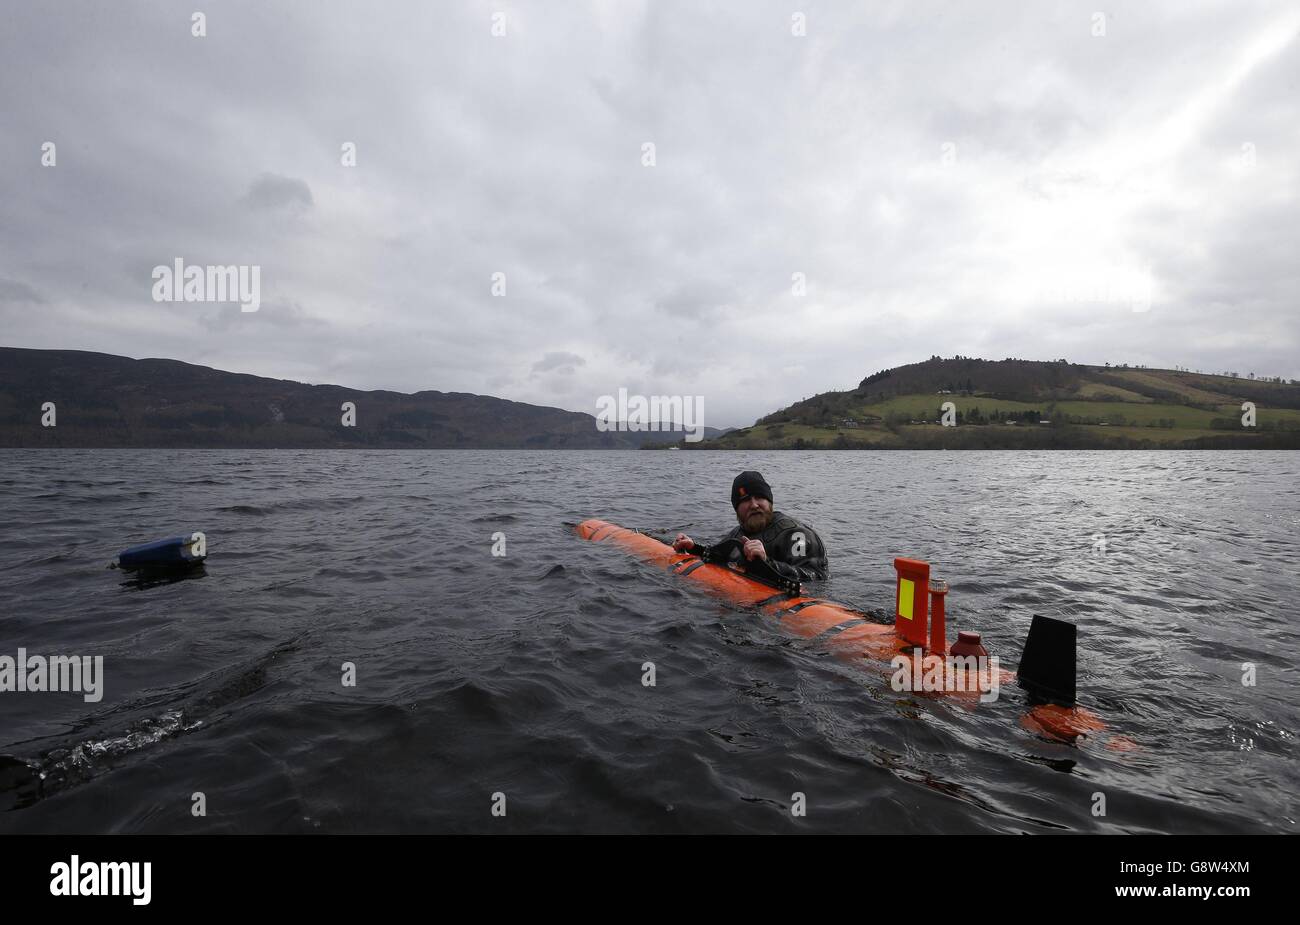 John Haig aux côtés du Munin AUV (véhicule sous-marin autonome) au Loch Ness, alors que les chasseurs de Nessie étaient déçus quand le monstre découvert au fond du loch s'est avéré être un prop de film des années 1970. Banque D'Images